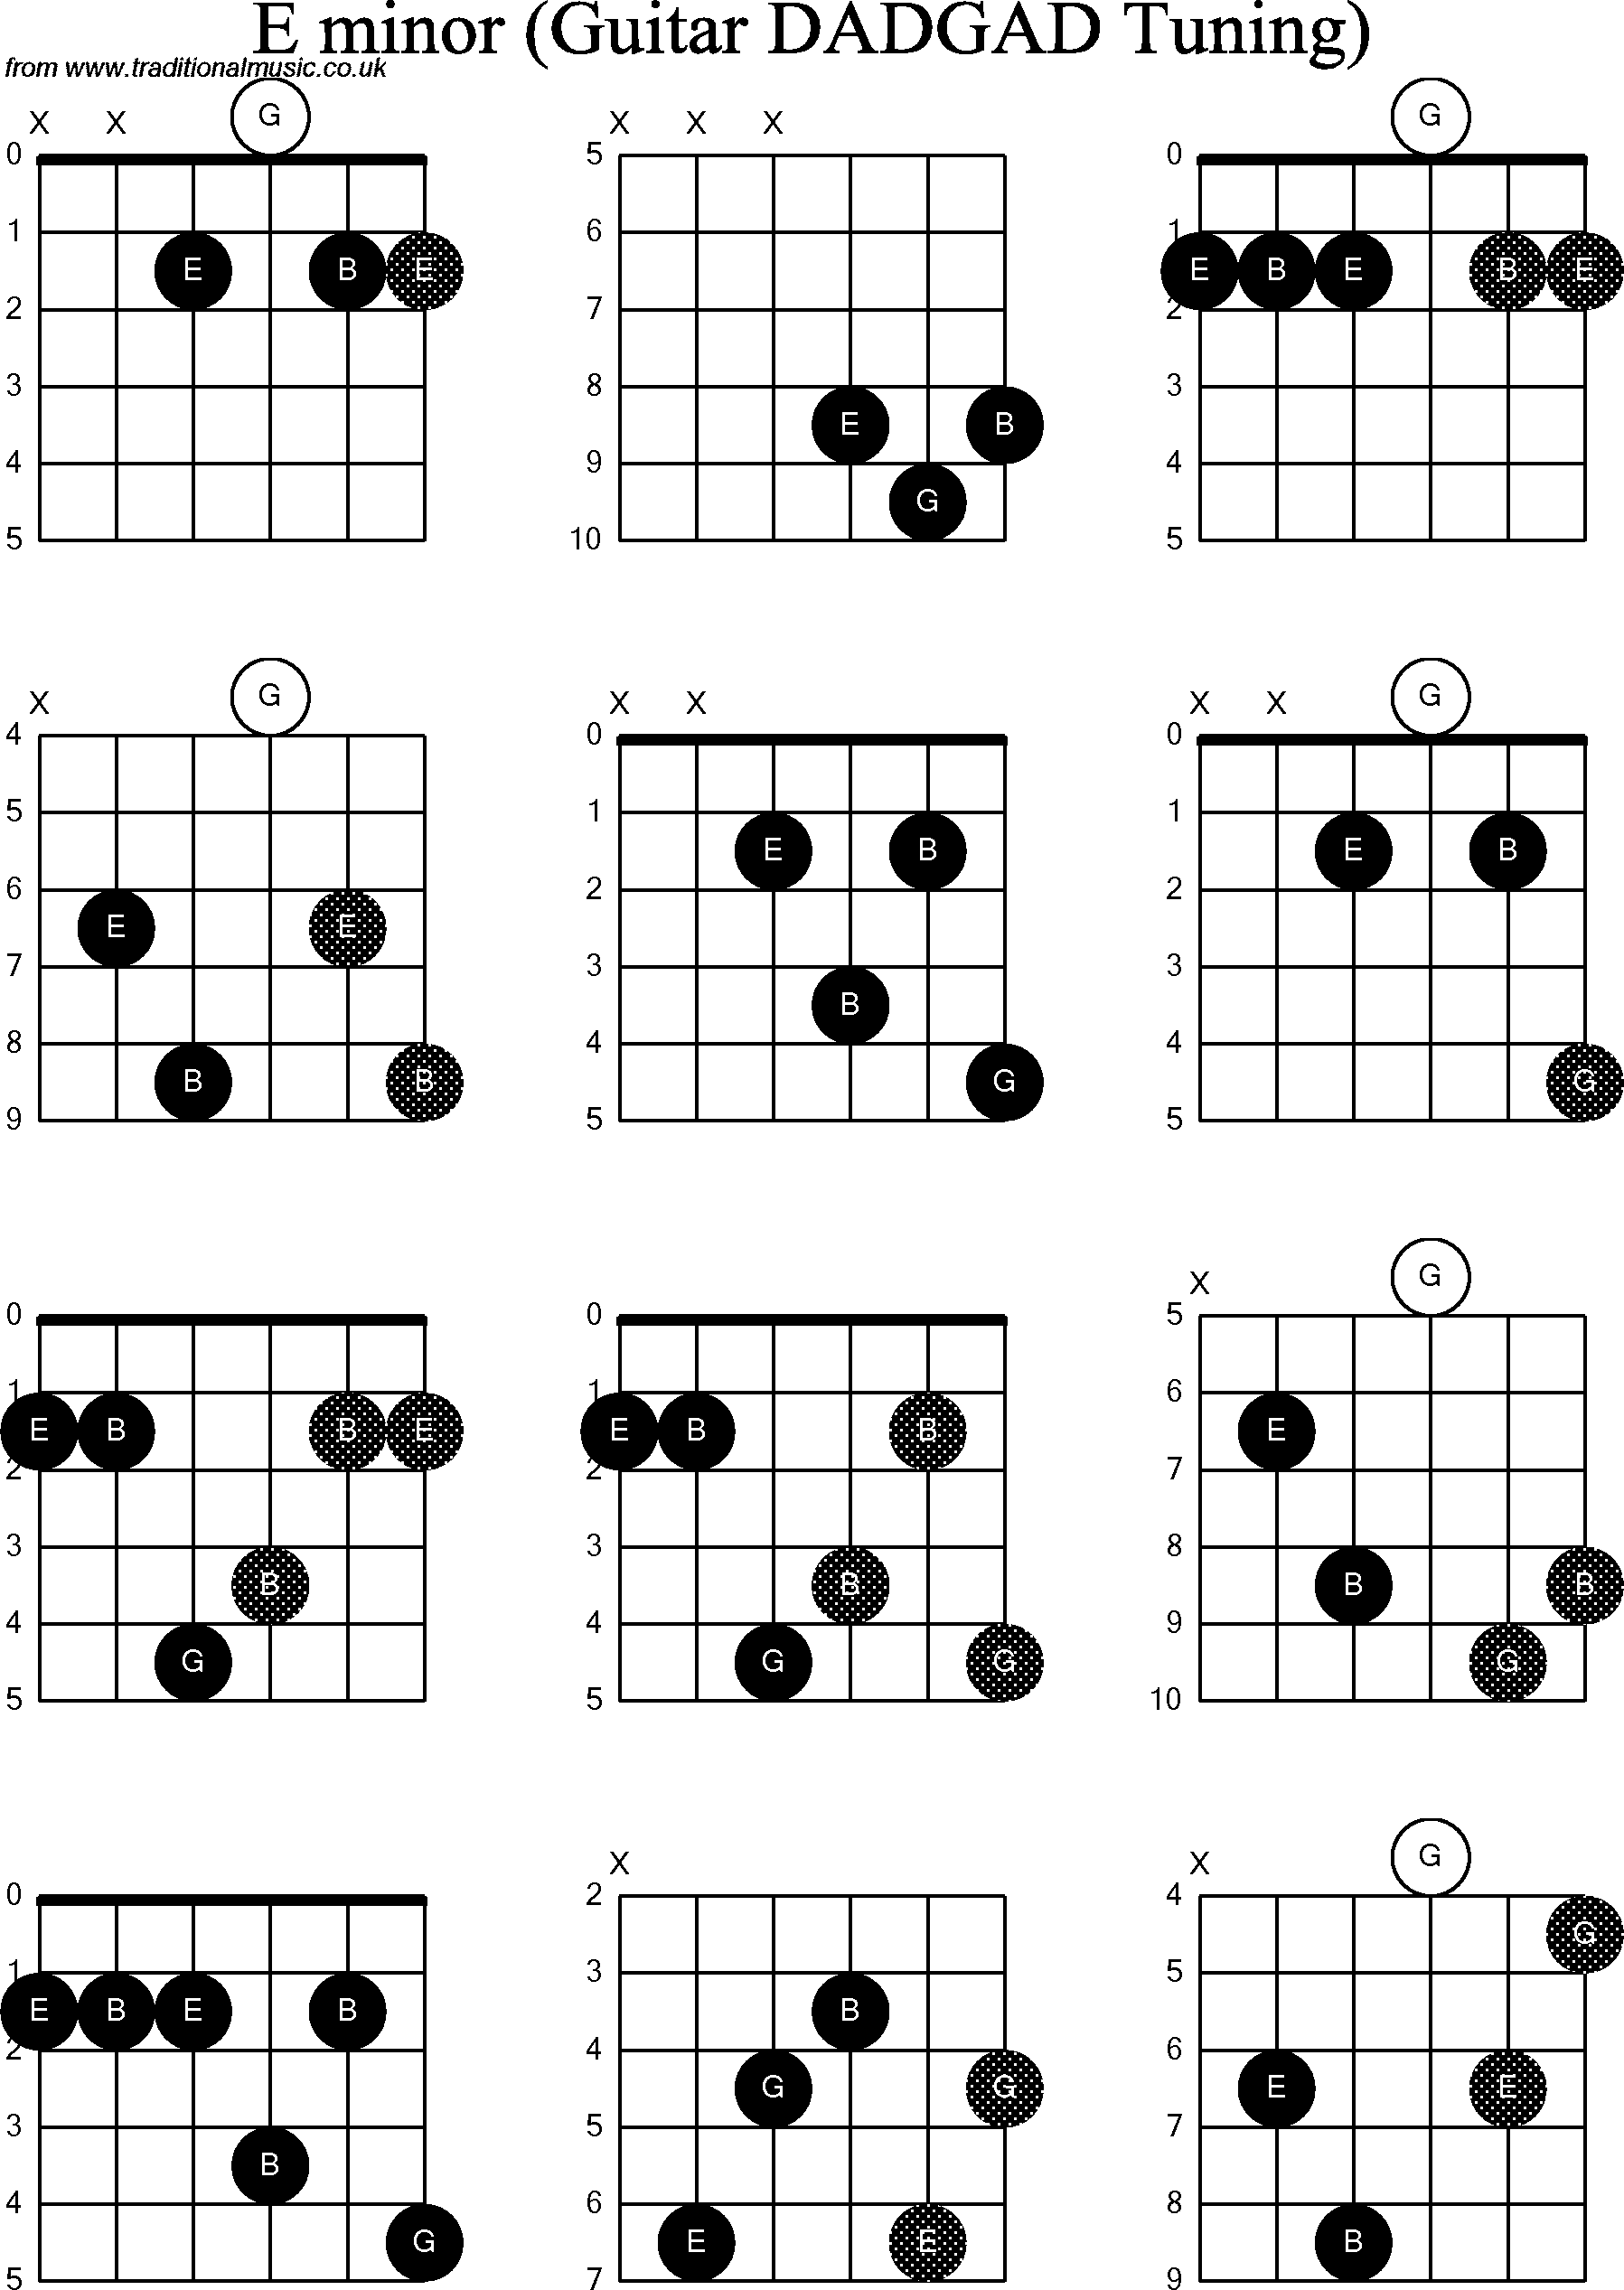 Chord Diagrams for D Modal Guitar(DADGAD), E Minor